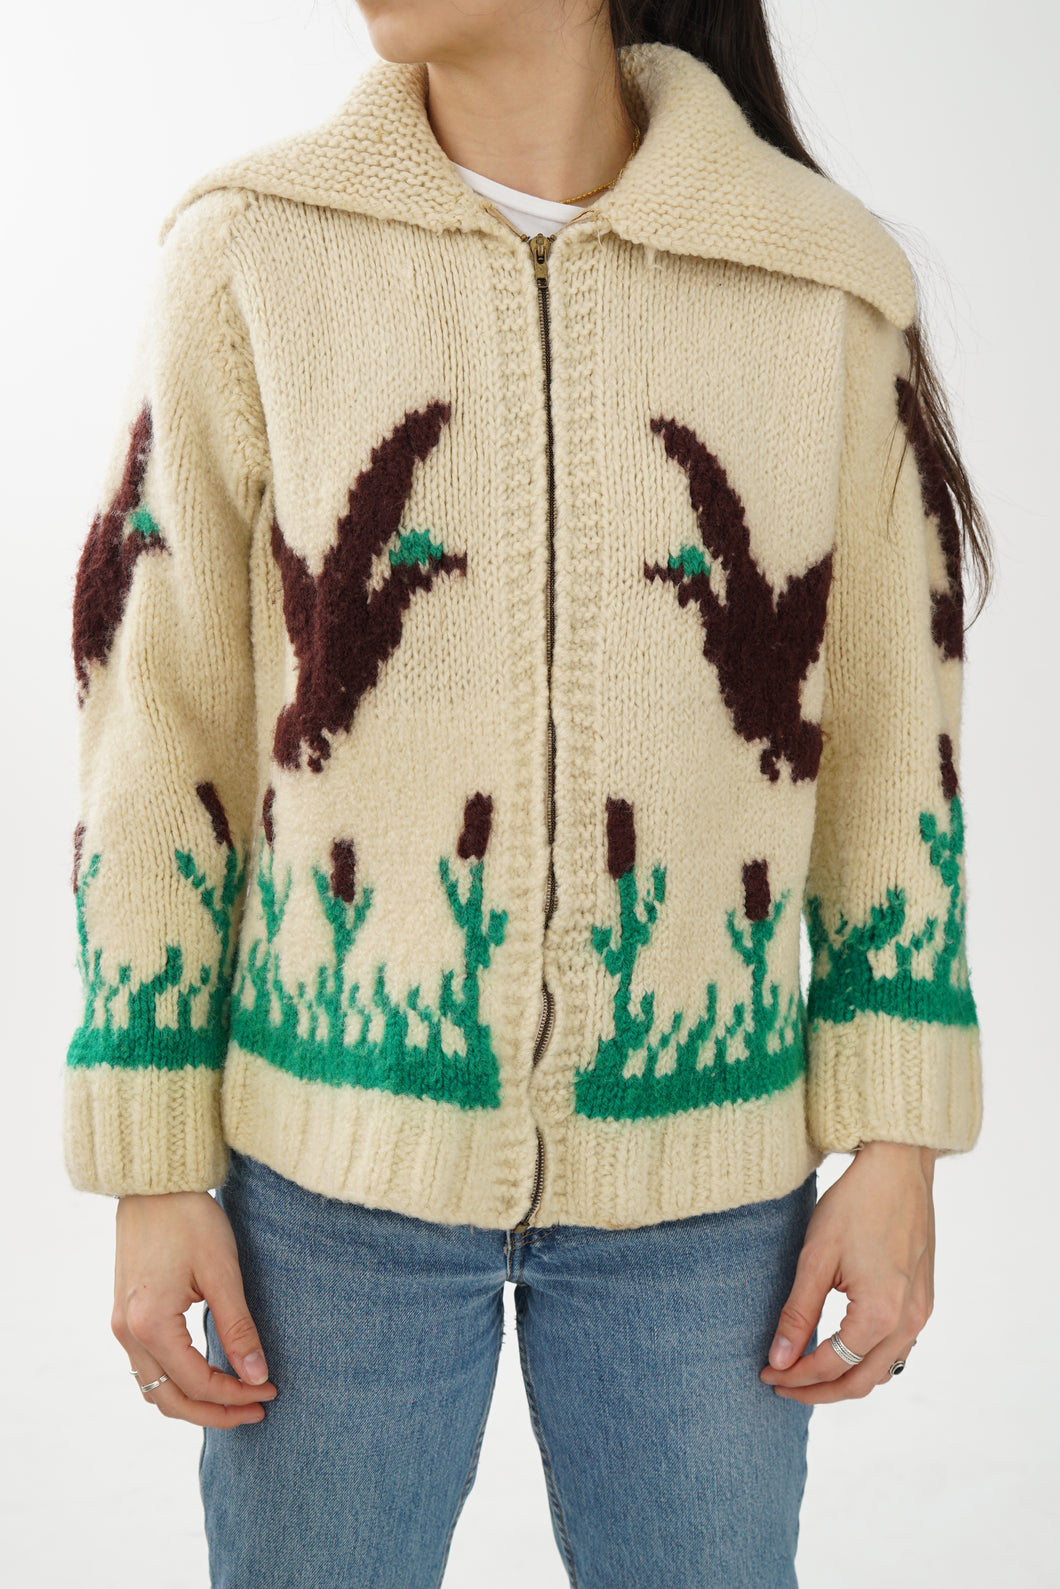 Manteau tricot en laine vintage thématique printemps unisex taille S-M